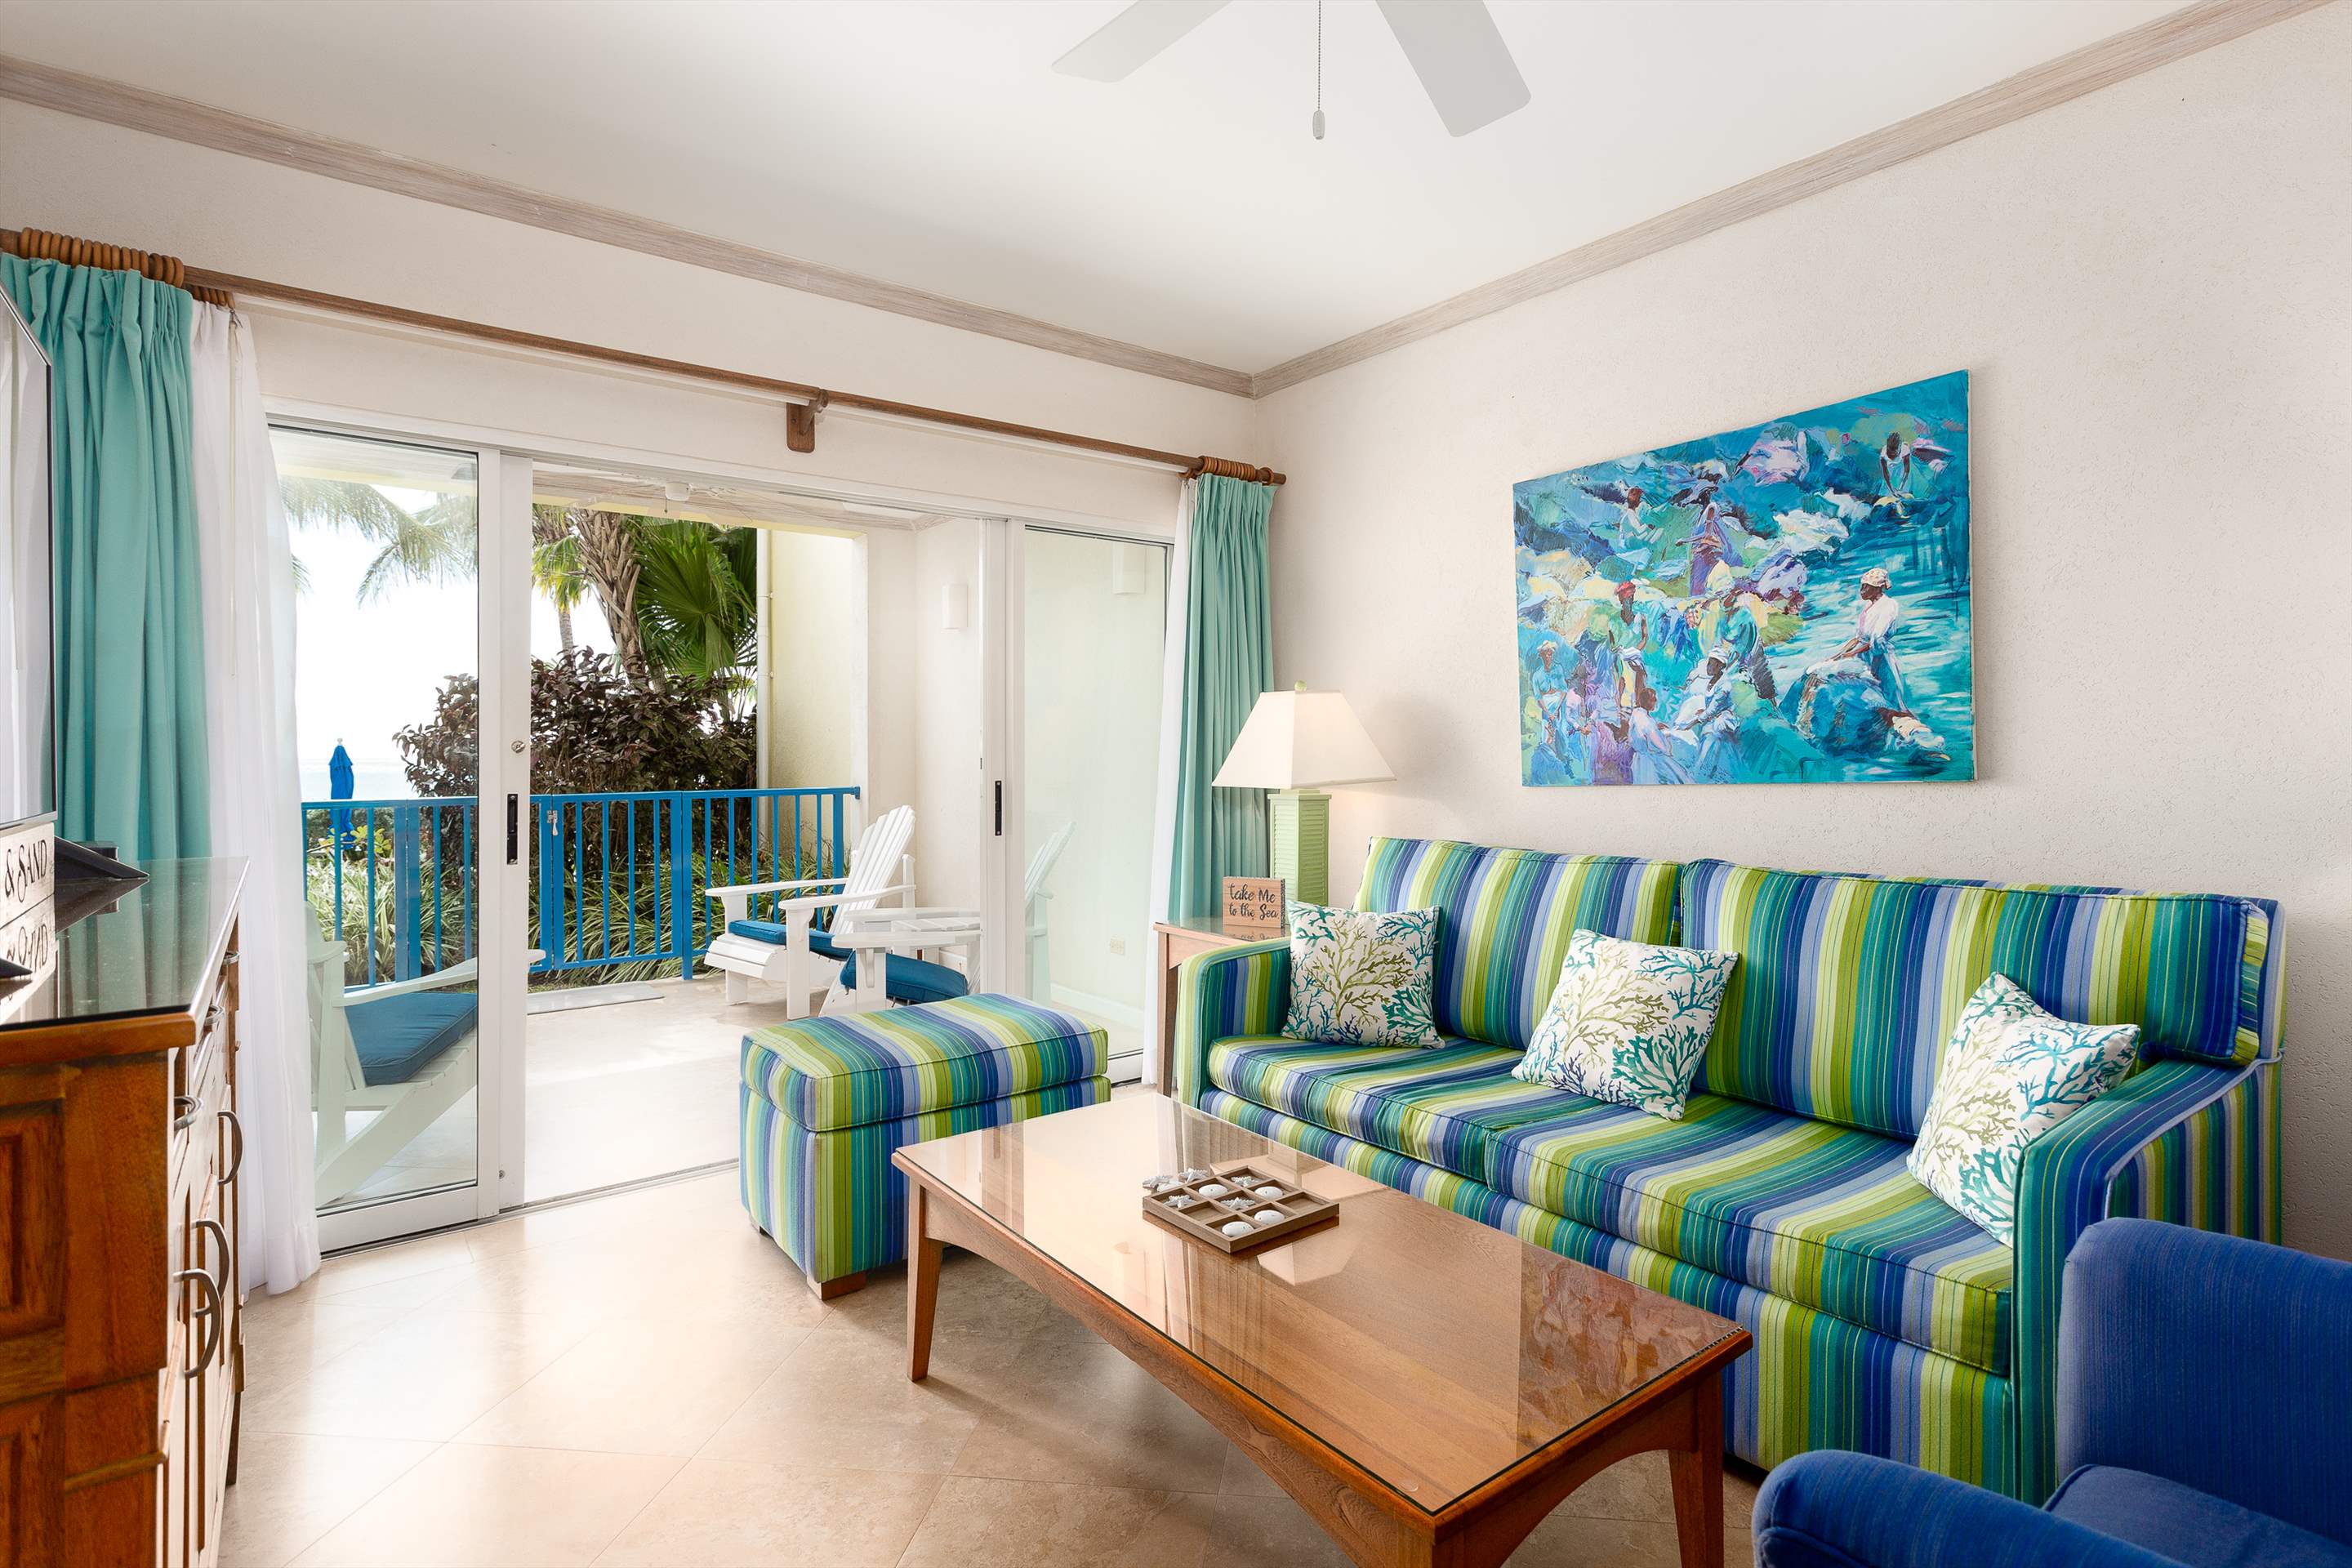 Maxwell Beach Villas 102, 2 Bedroom, 2 bedroom apartment in St. Lawrence Gap & South Coast, Barbados Photo #5